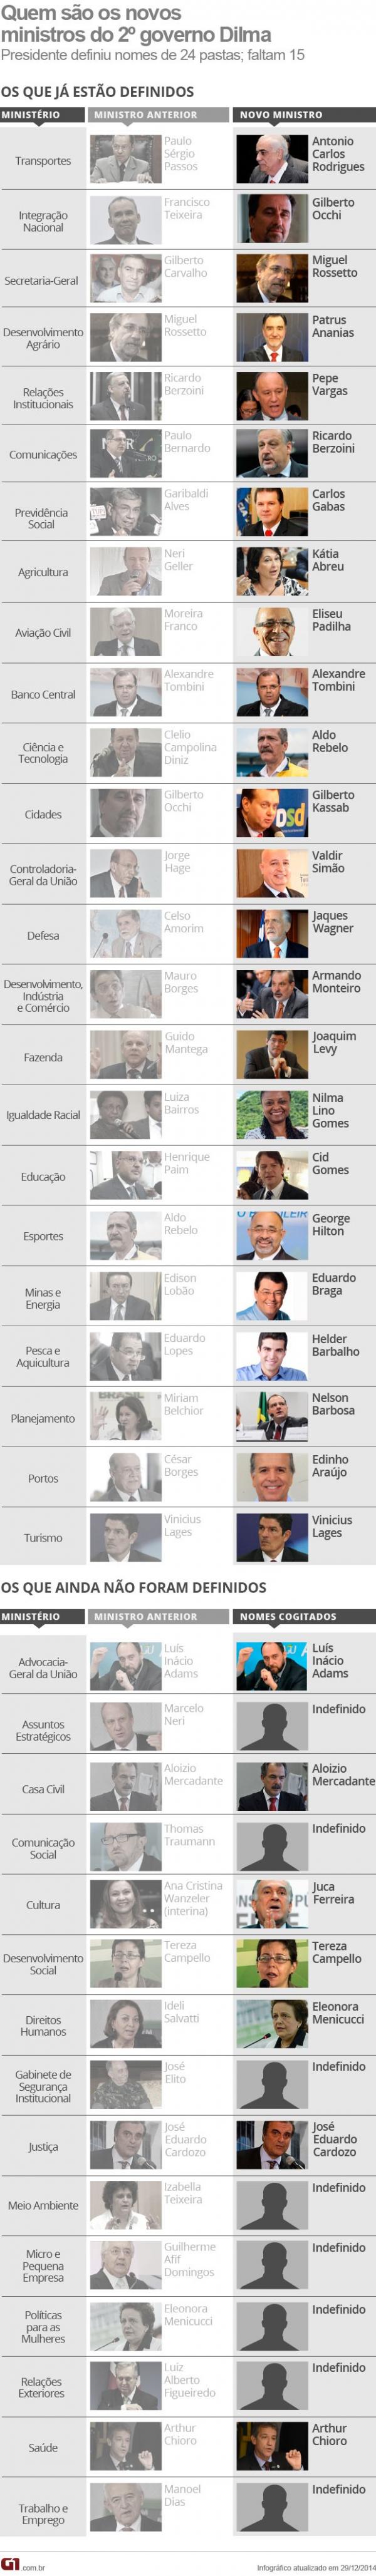 Ministros segundo mandato governo Dilma(Imagem:Editoria de Arte/G1)